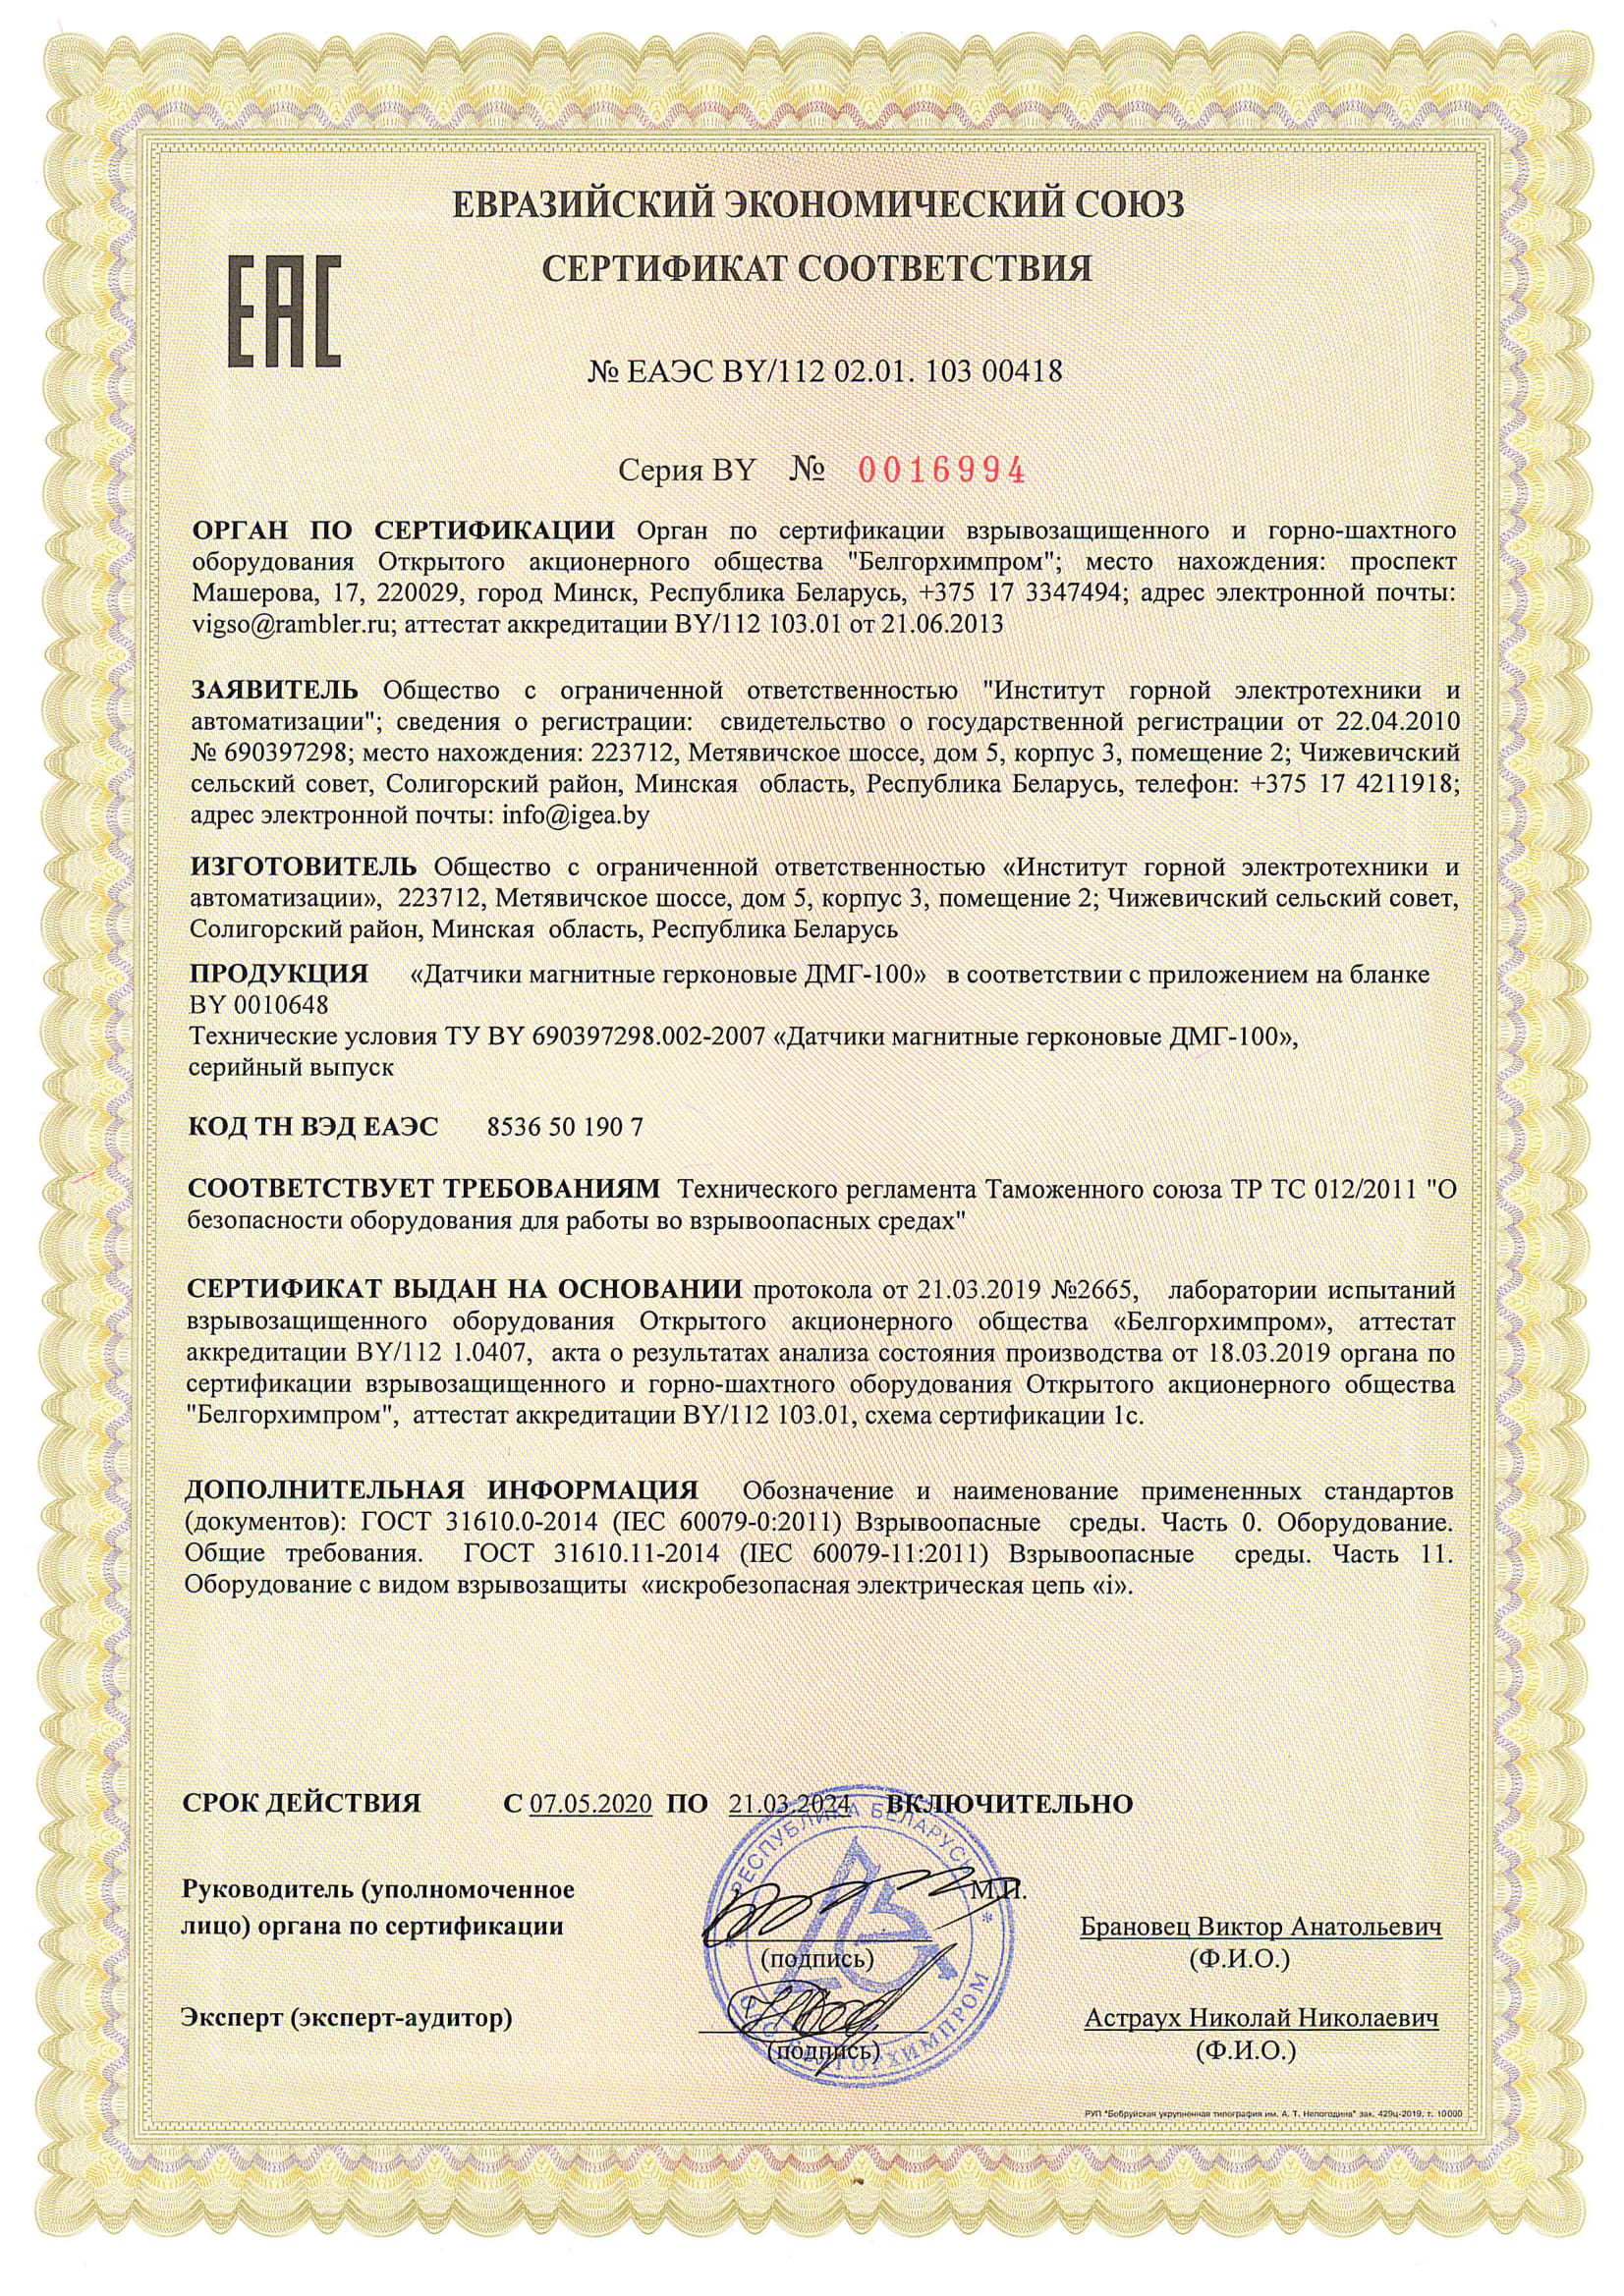 Сертыфікат адпаведнасці ТР МС 012/2011  №ЕАЭС BY/112 02.01.103 00418 да 21.03.2024  